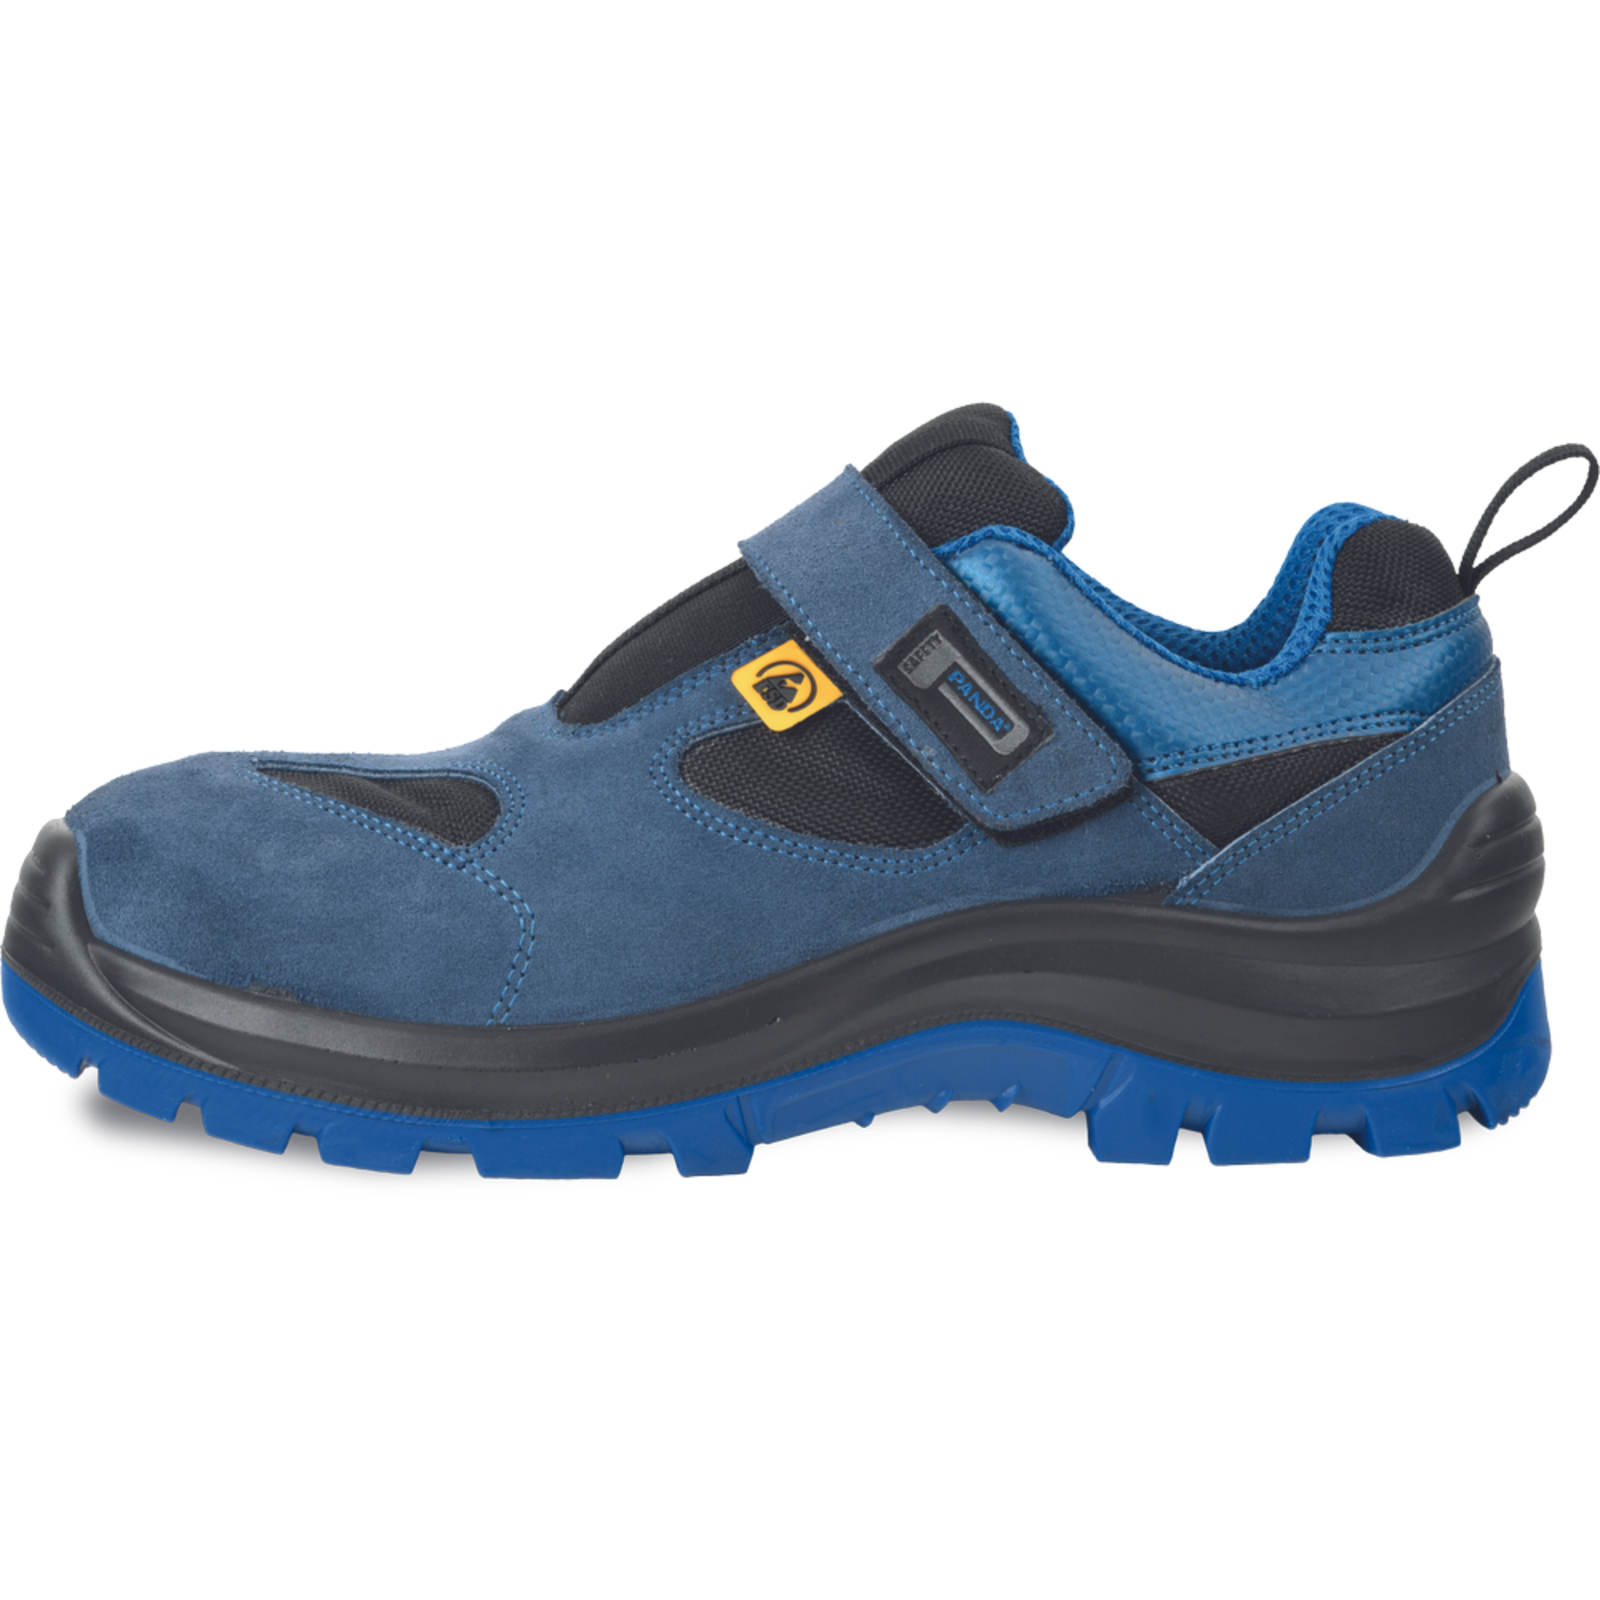 Bezpečnostné pracovné sandále Panda Wilk MF ESD S1P SRC - veľkosť: 38, farba: modrá/čierna